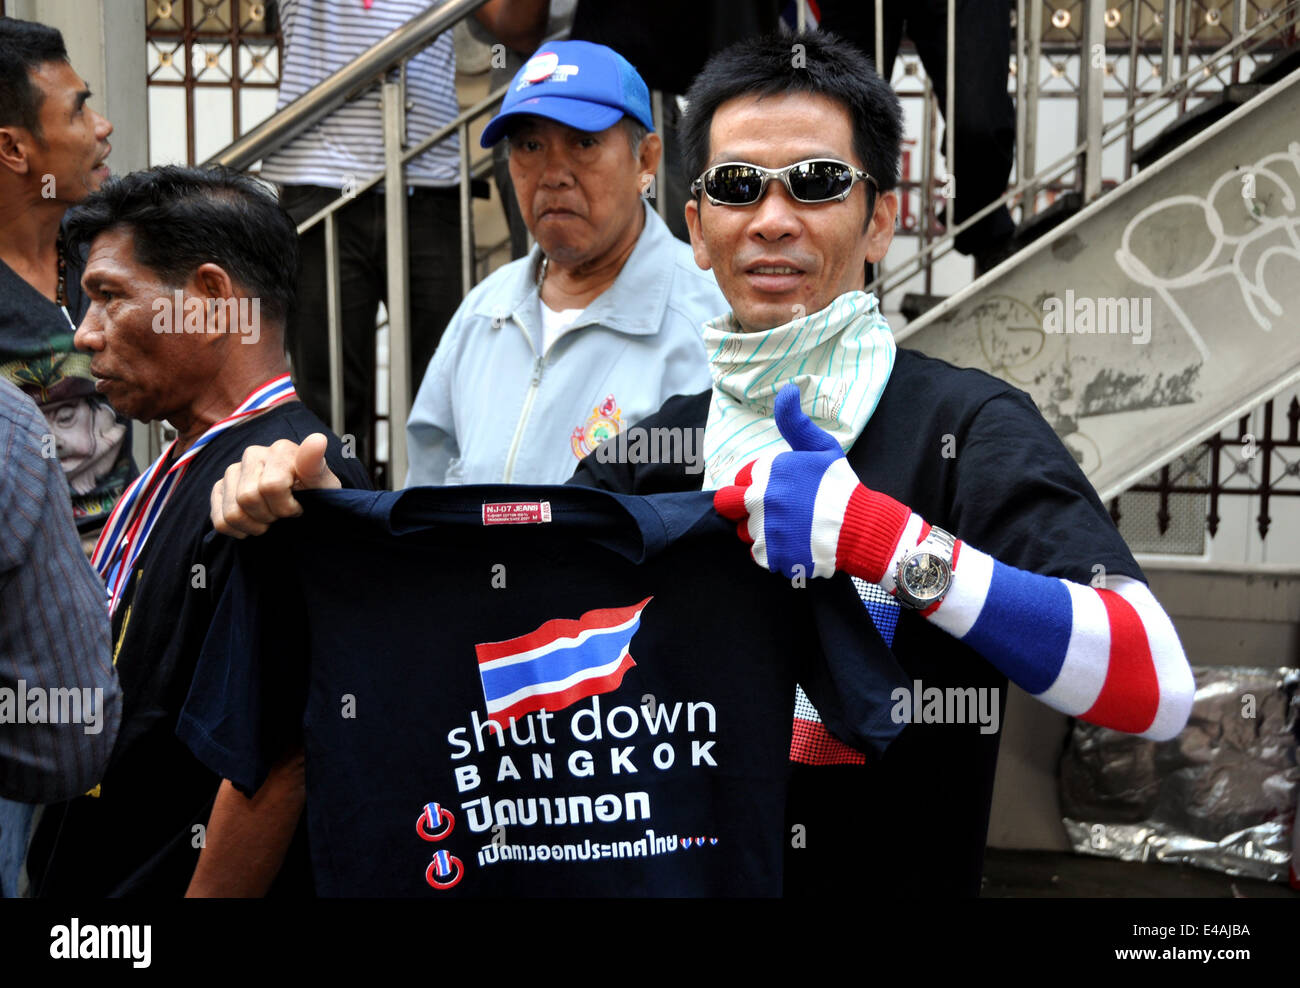 BANGKOK, THAILAND: Thai man holding up a Shut Down Bangkok tee-shirt during the anti-government protests Stock Photo